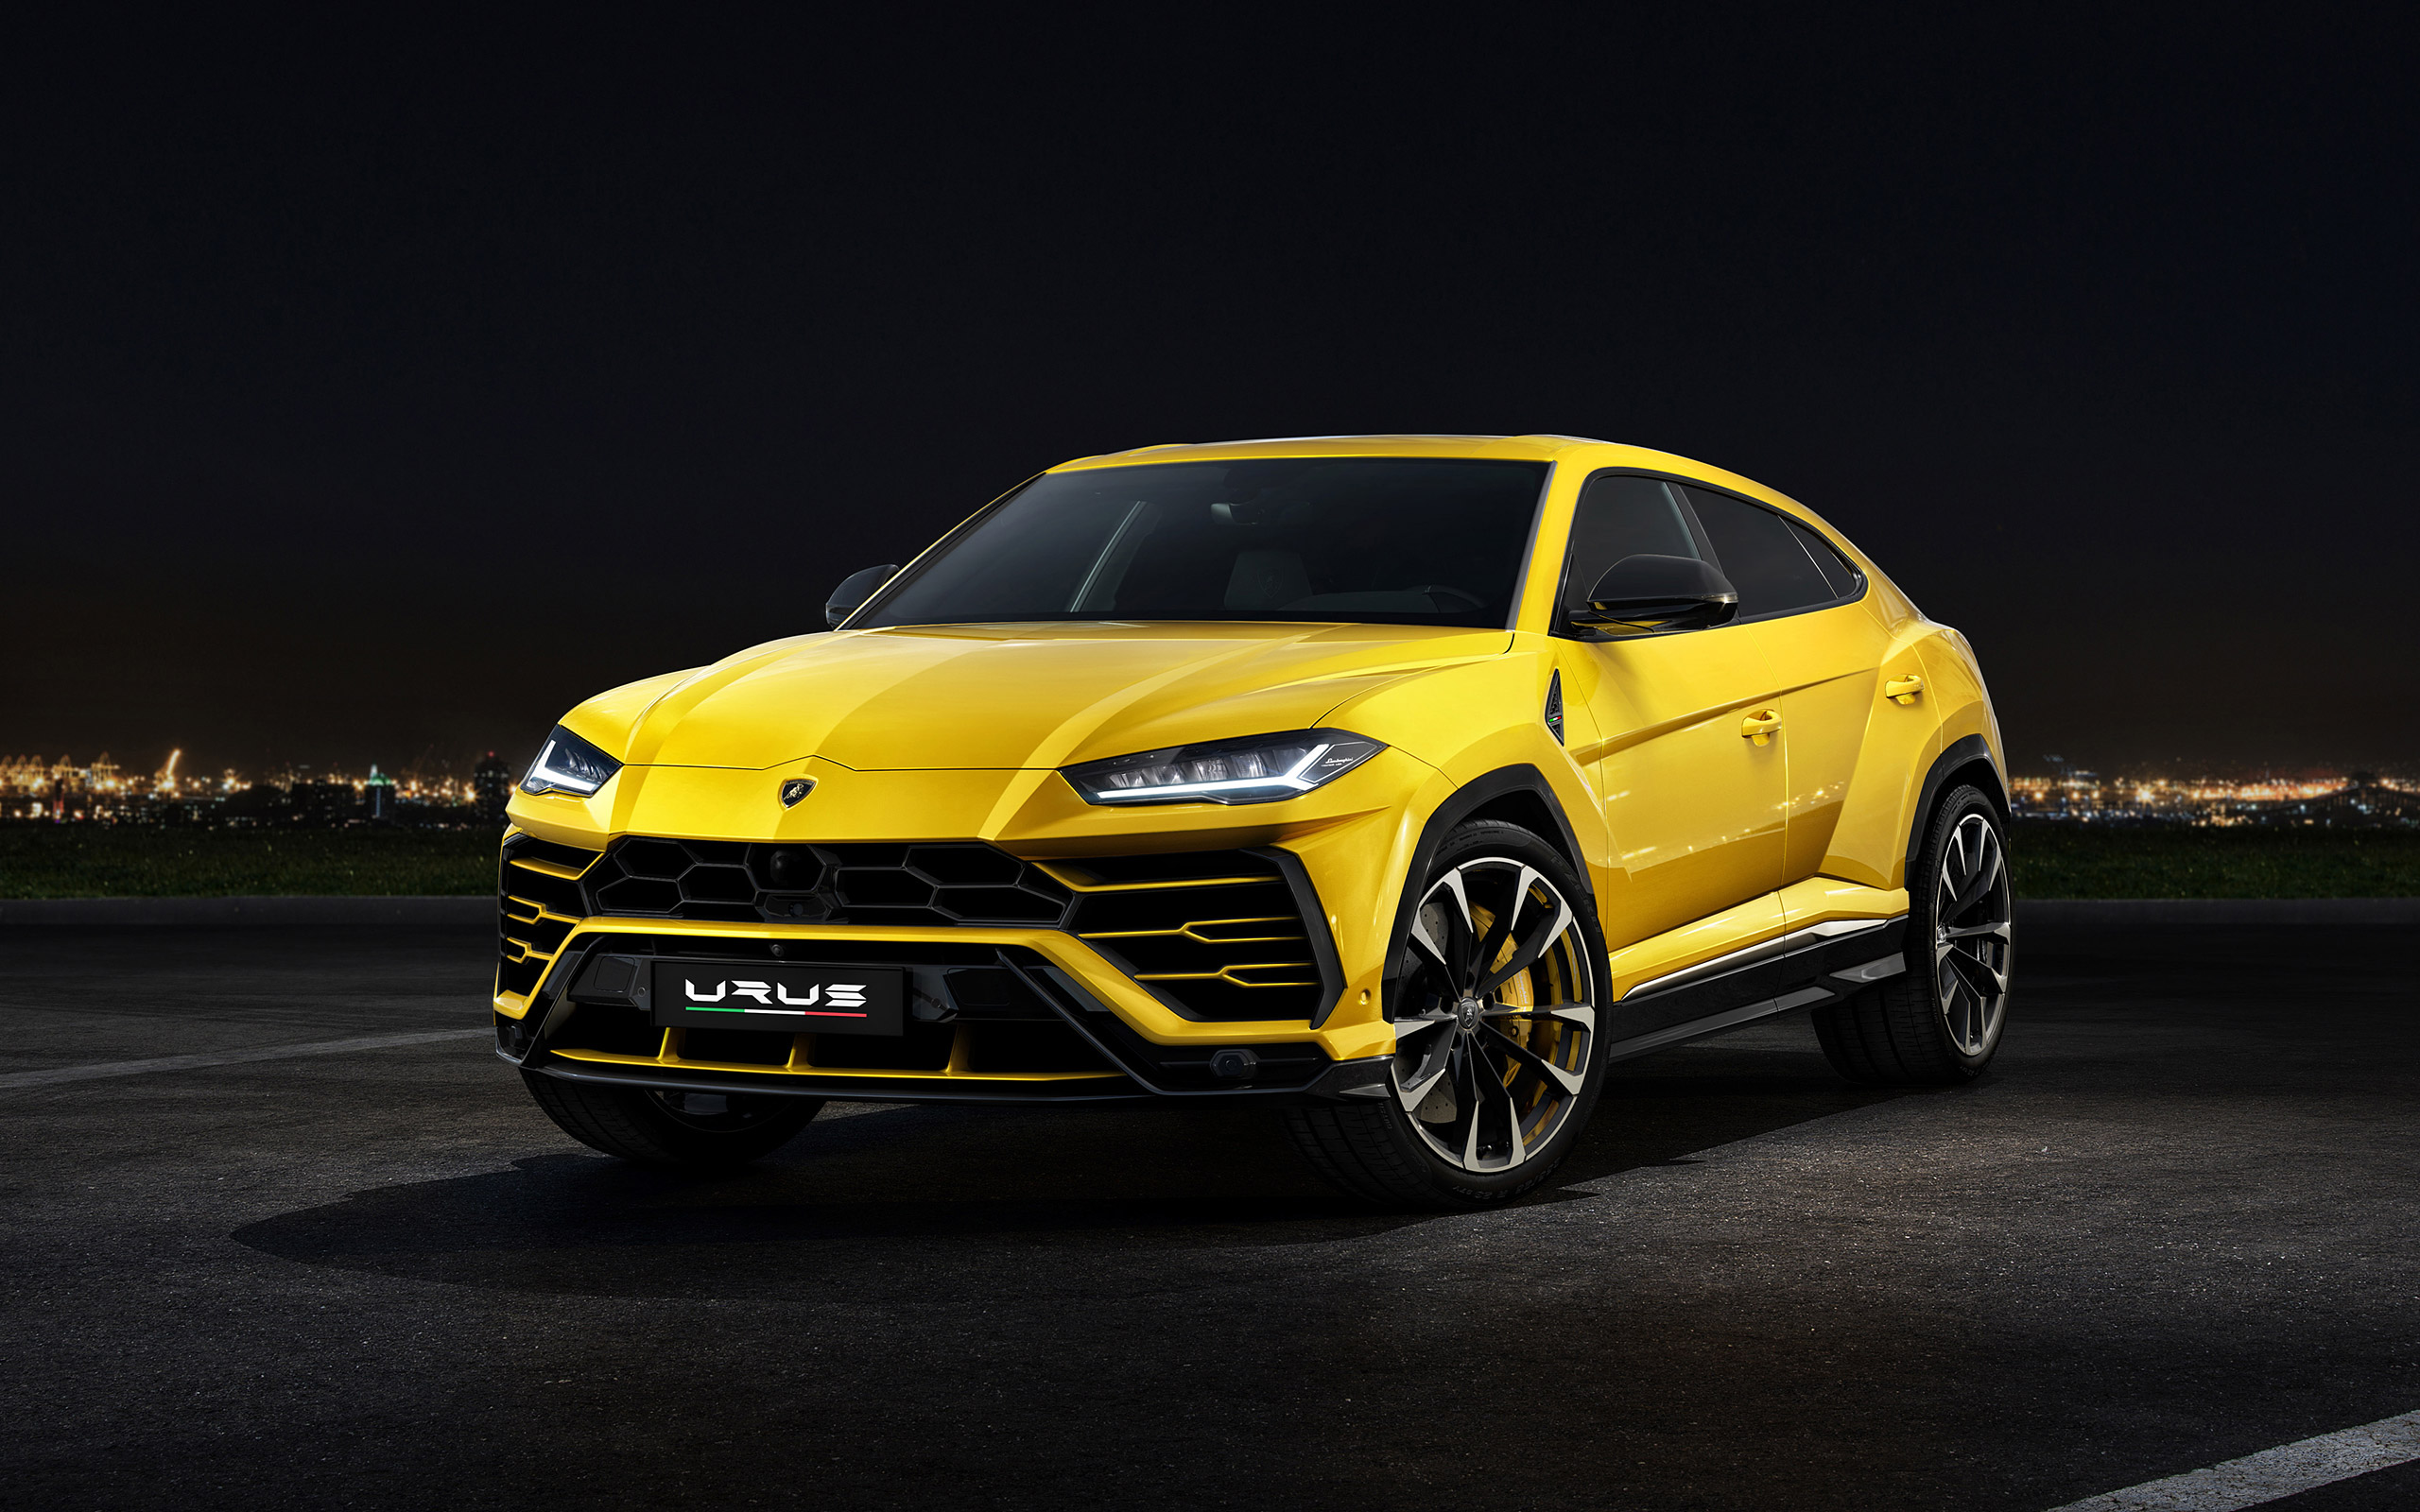  2019 Lamborghini Urus Wallpaper.